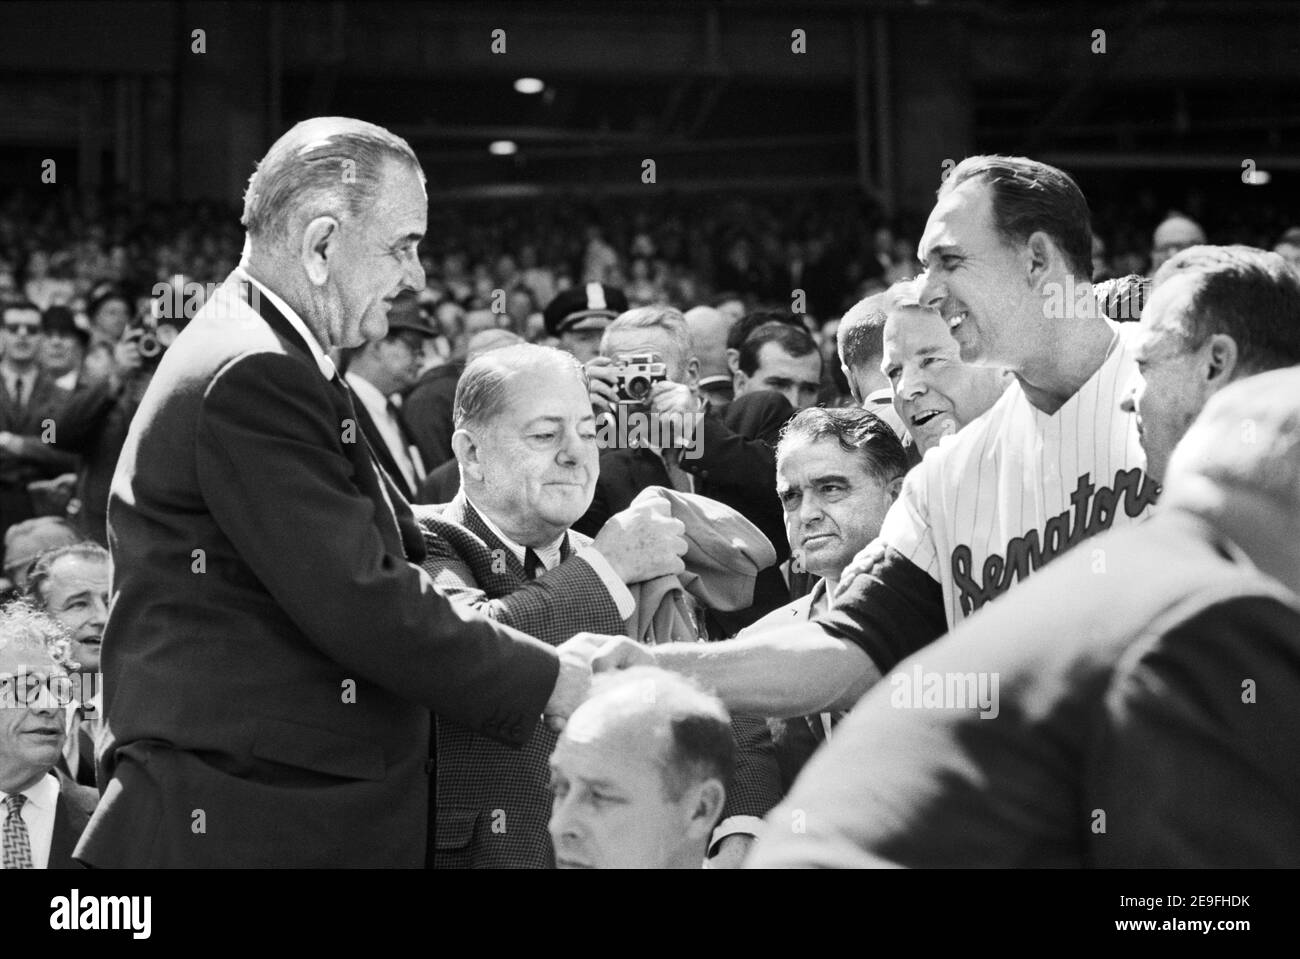 US-Präsident Lyndon Johnson schüttelt sich die Hände mit Washington Senators Manager Gil Hodges während des Eröffnungstages Game, Washington, D.C., USA, Warren K. Leffler, Marion S. Triosko, 12. April 1965 Stockfoto